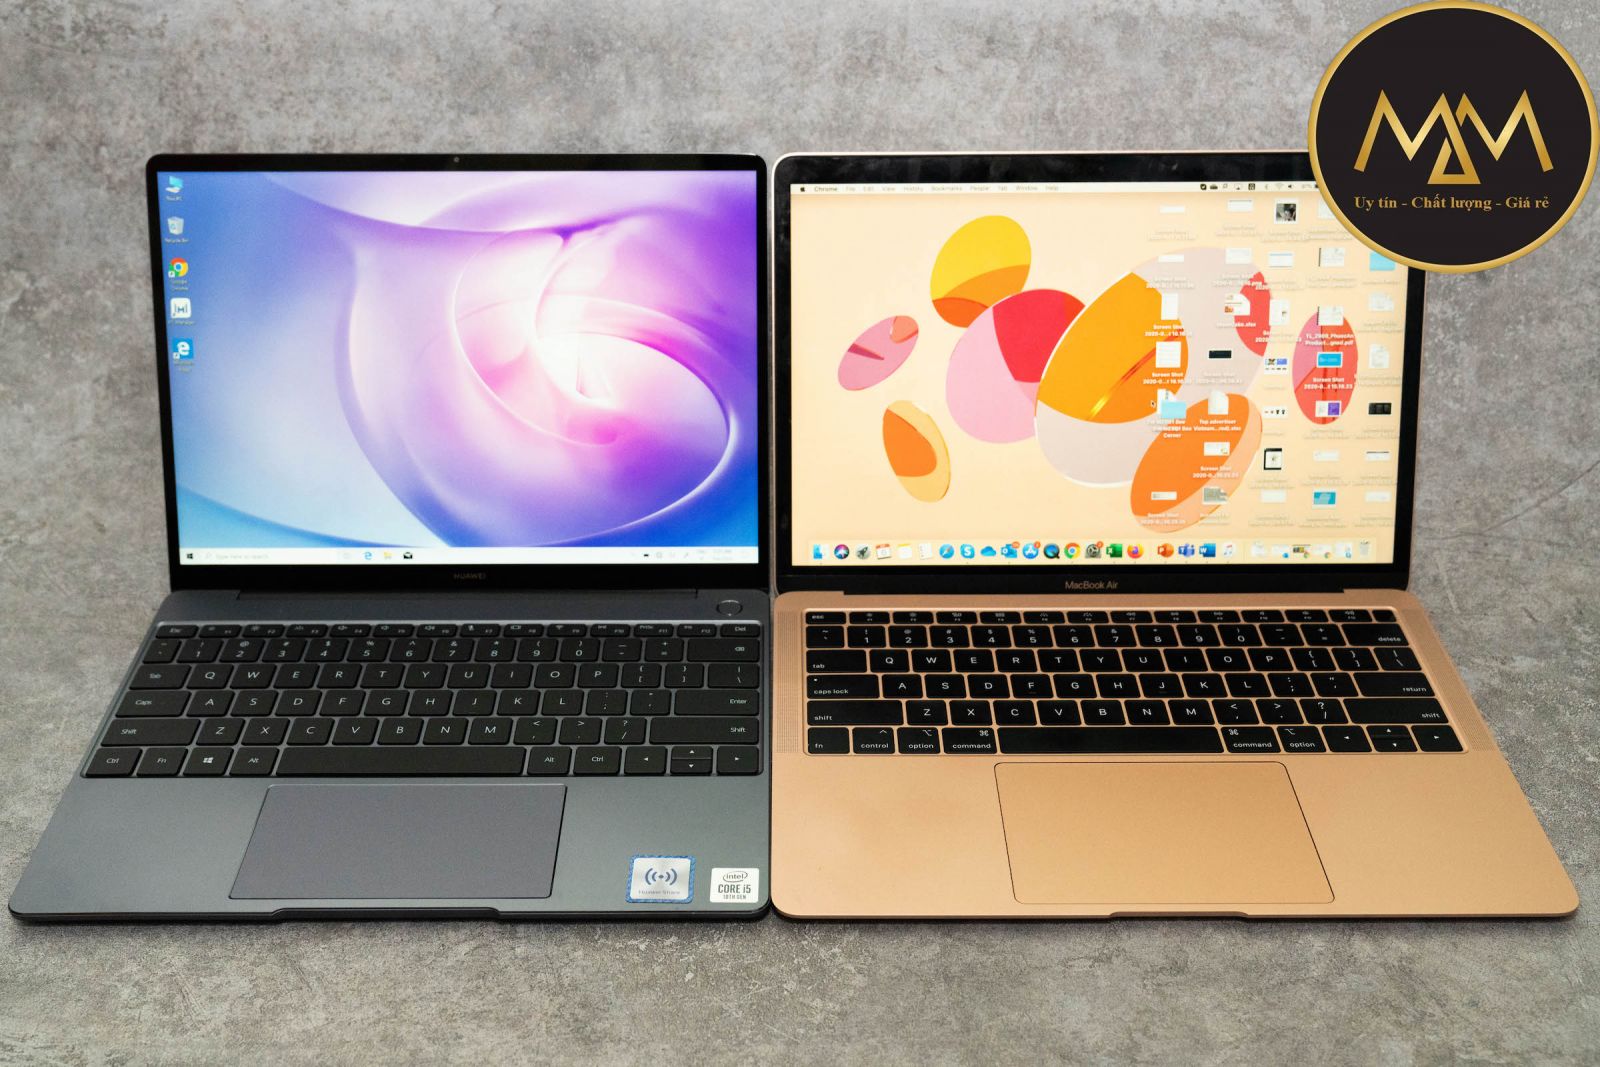 Laptop Cũ Uy Tín Giá Rẻ Tân Phú